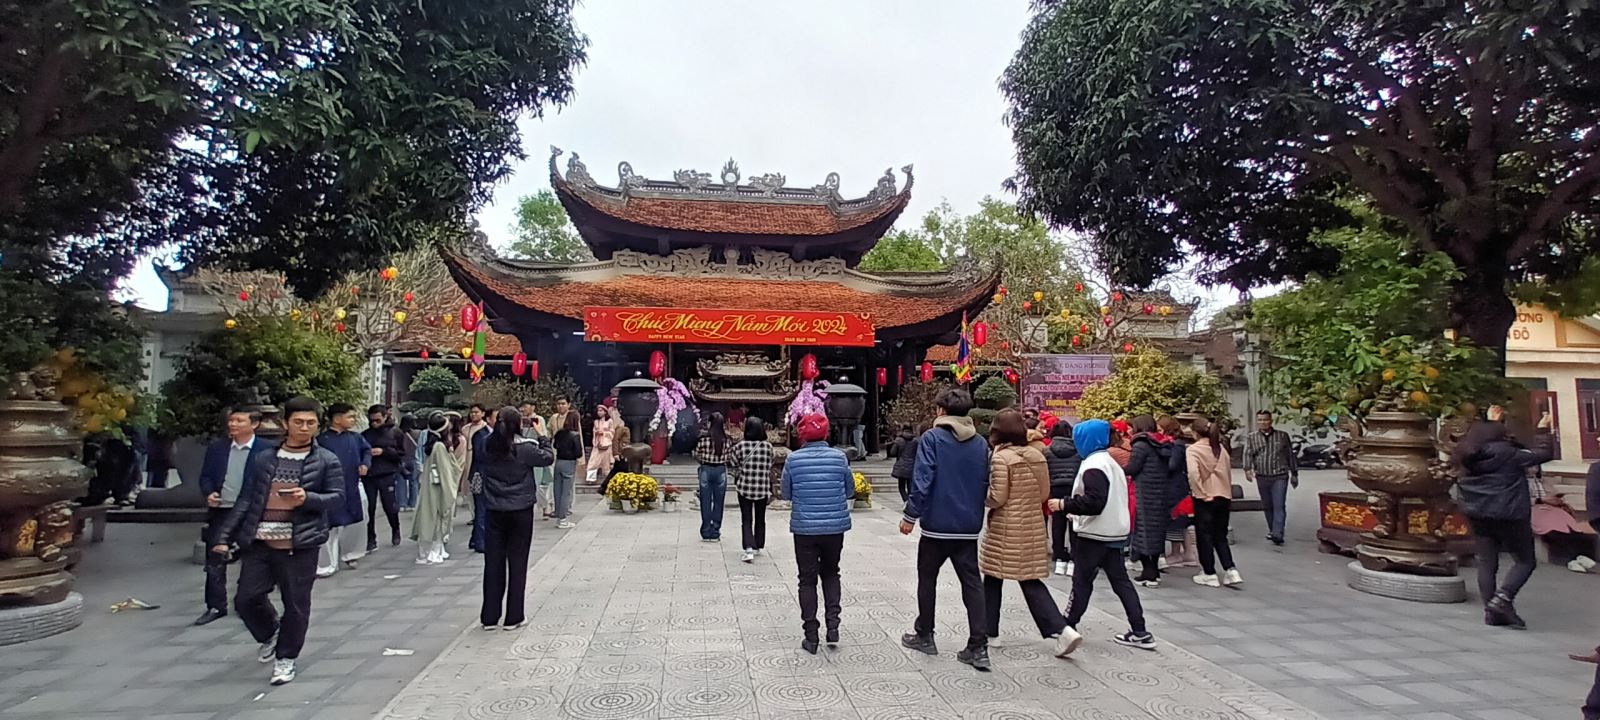 Thực trạng và giải pháp phát triển du lịch văn hóa tâm linh tỉnh Bắc Ninh theo hướng bền vững